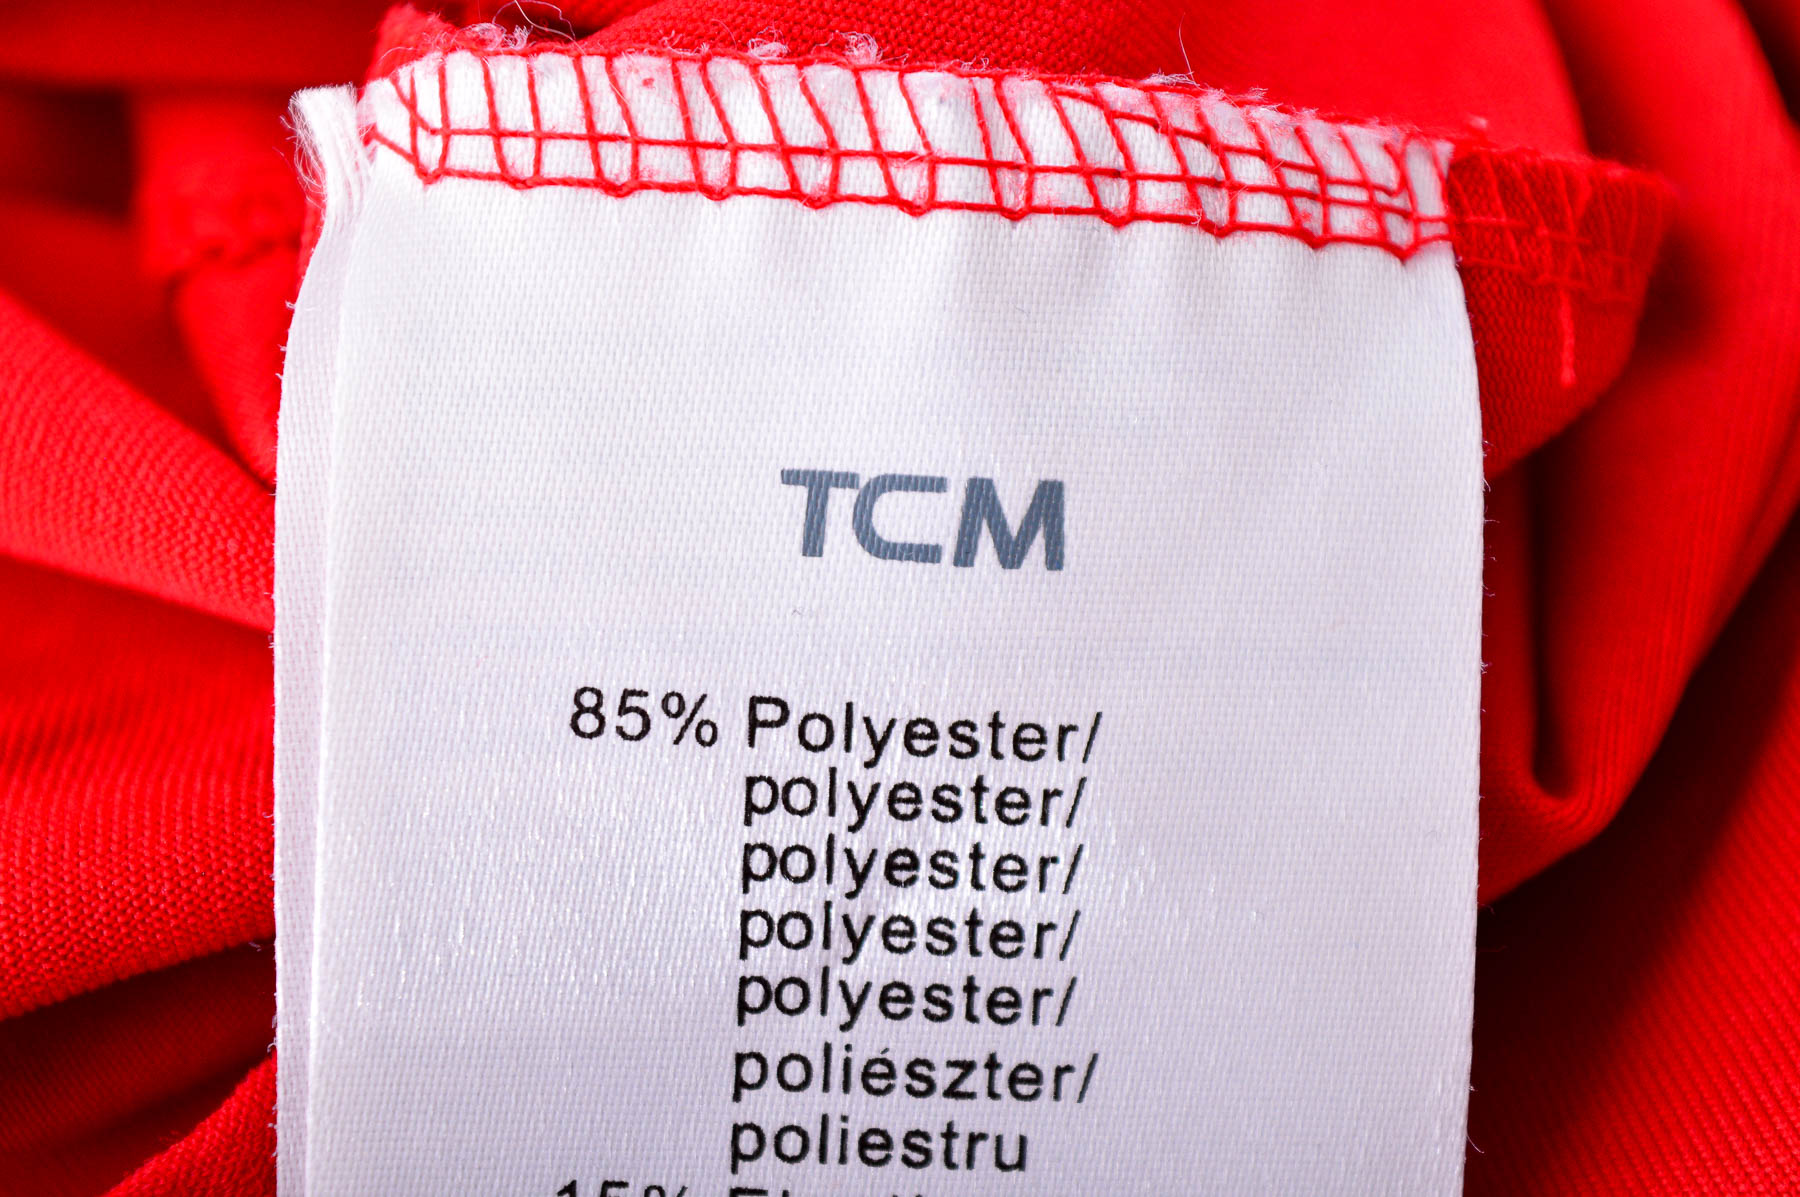 Мъжка спортна блуза - TCM - 2